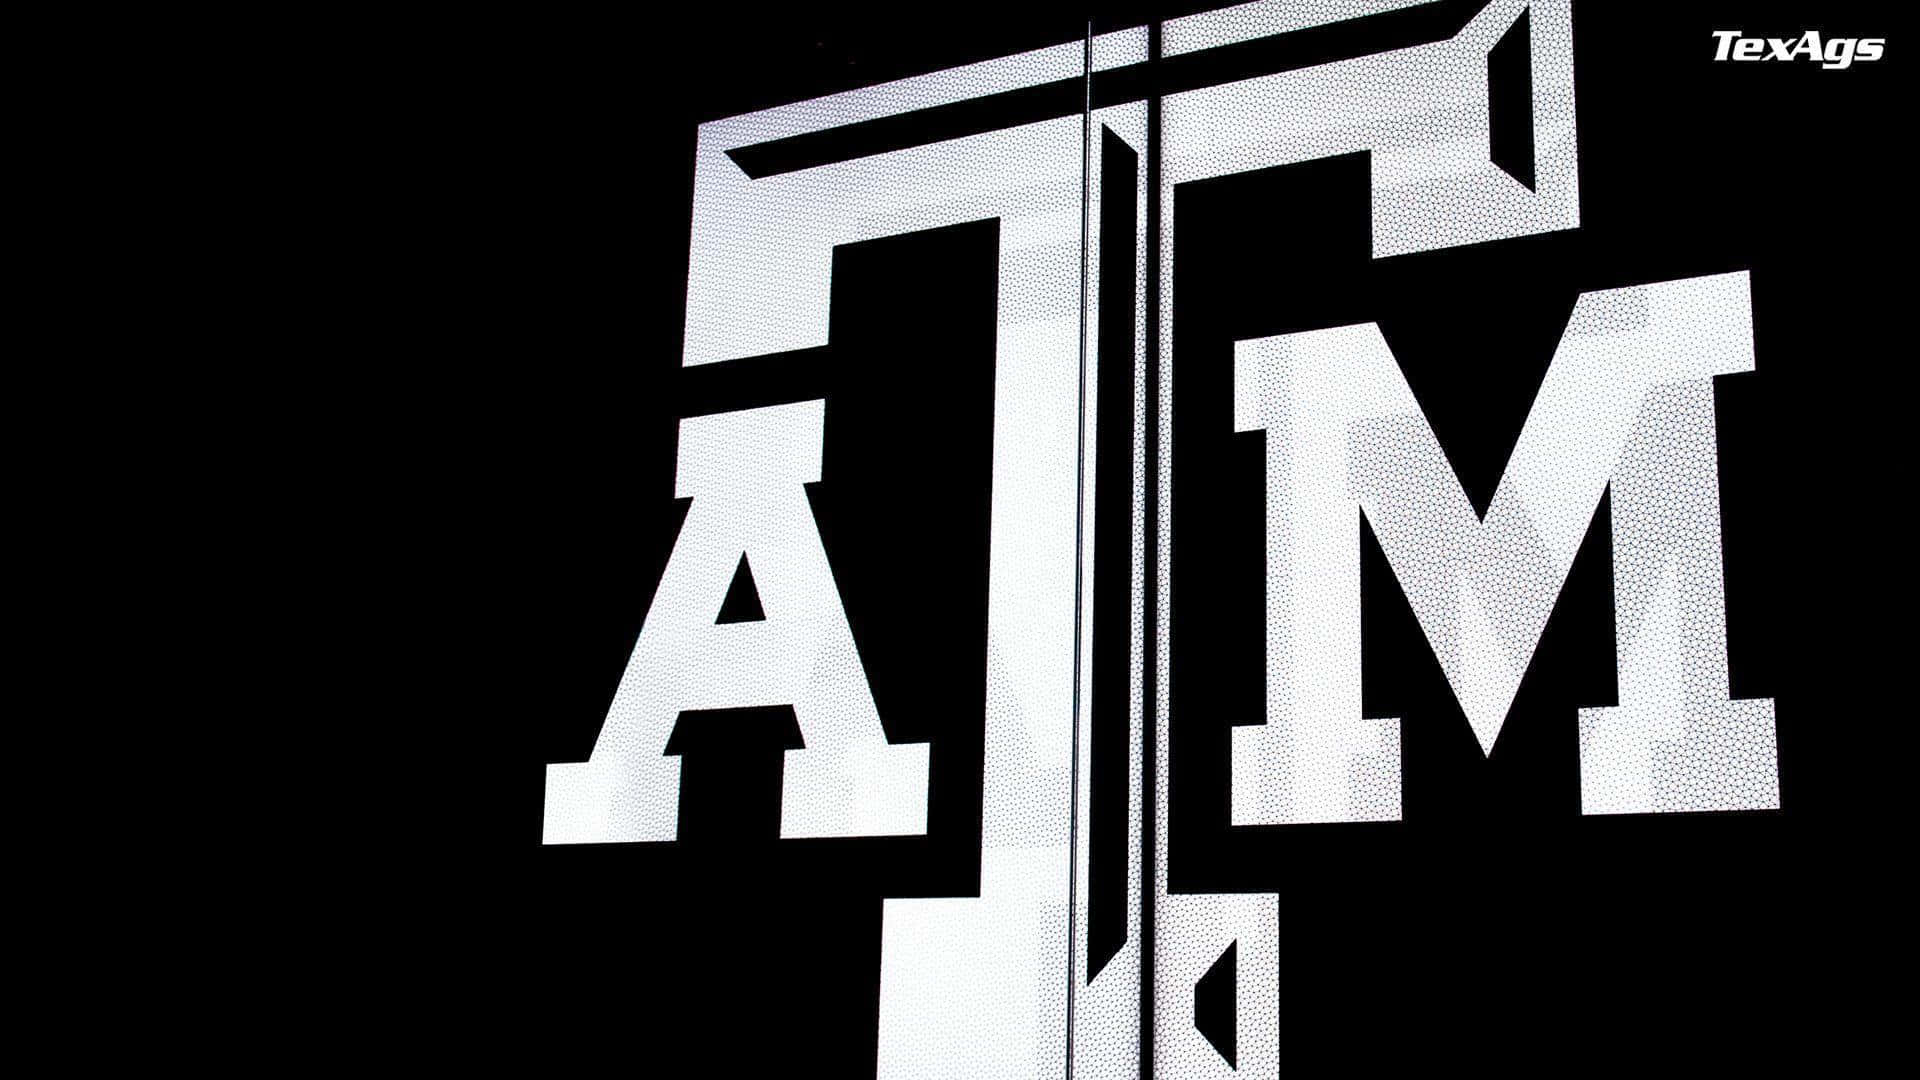 Imagenen Blanco Y Negro Del Logotipo De Texas Am Fondo de pantalla